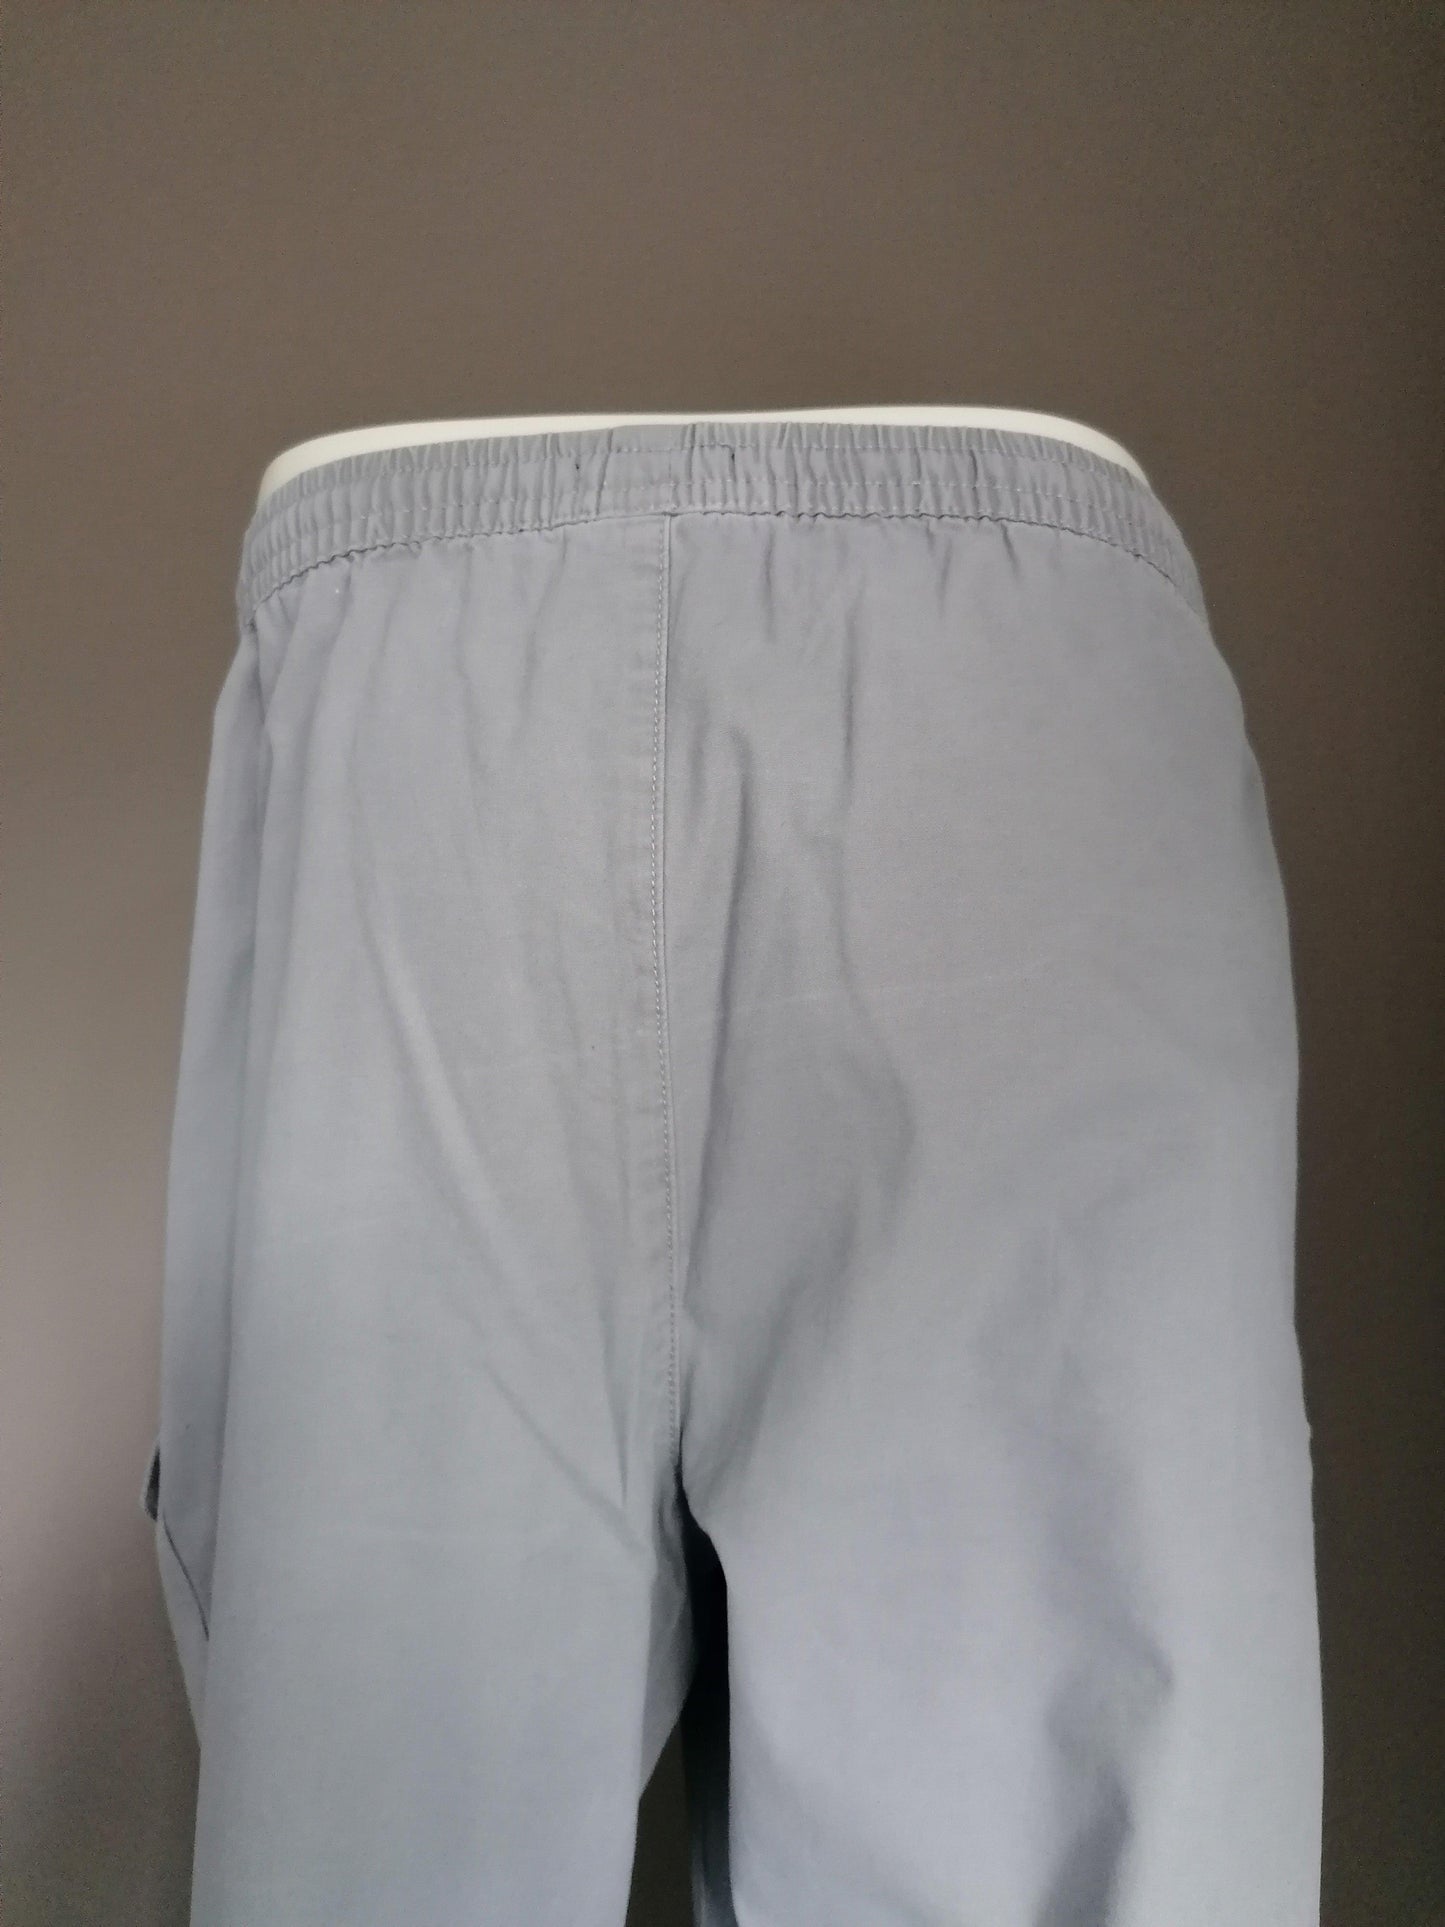 Atlas for Men broek met zakken aan de zijkant en elastische band. Grijs gekleurd. Maat XXXL / 3XL. - EcoGents